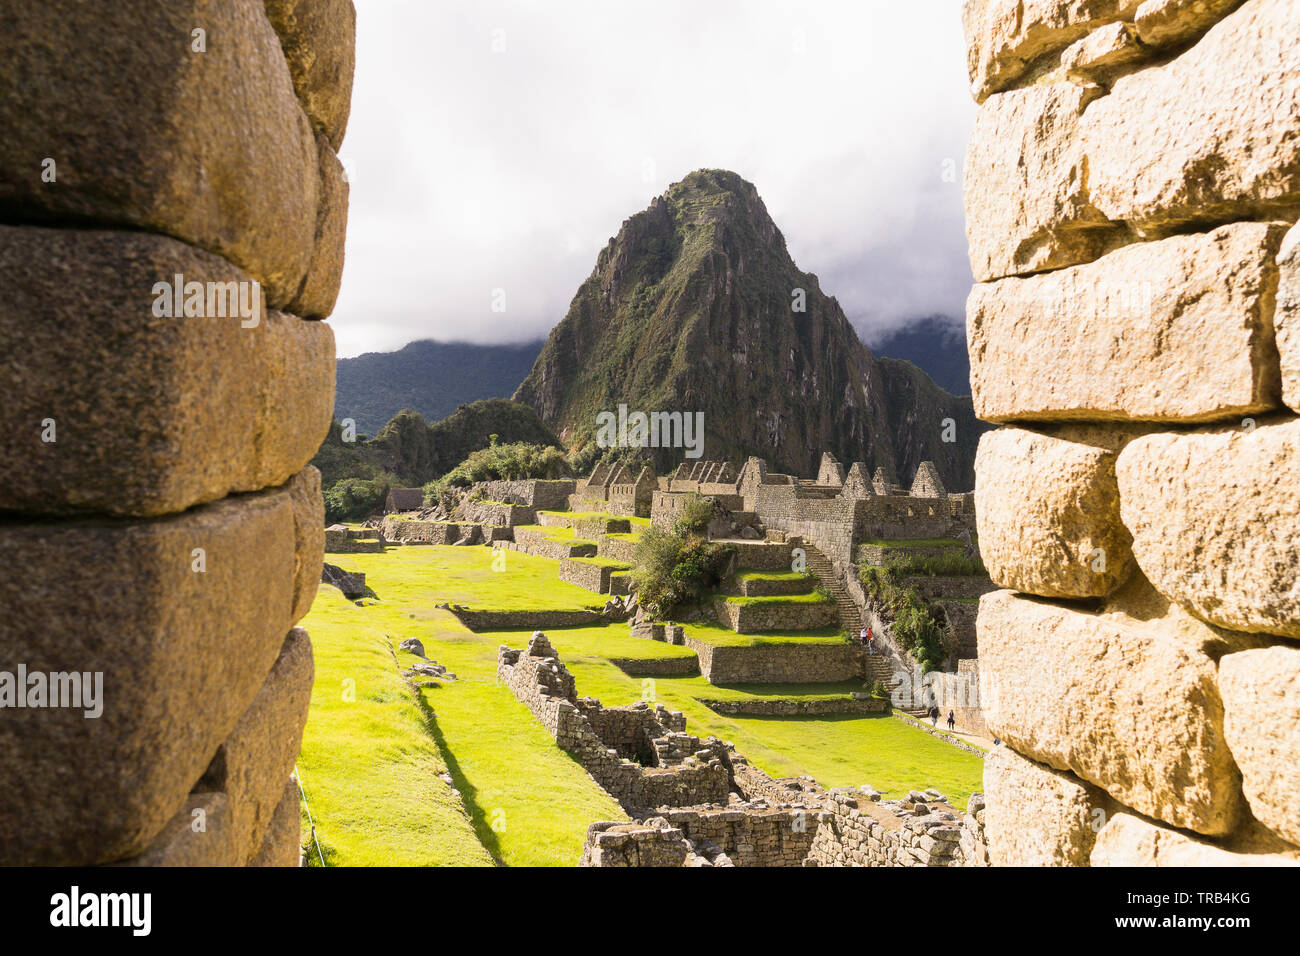 Le Machu Picchu au Pérou - vue de la montagne Huayna Picchu Wayna (Pikchu) à partir de la citadelle de Machu Picchu au Pérou. Banque D'Images